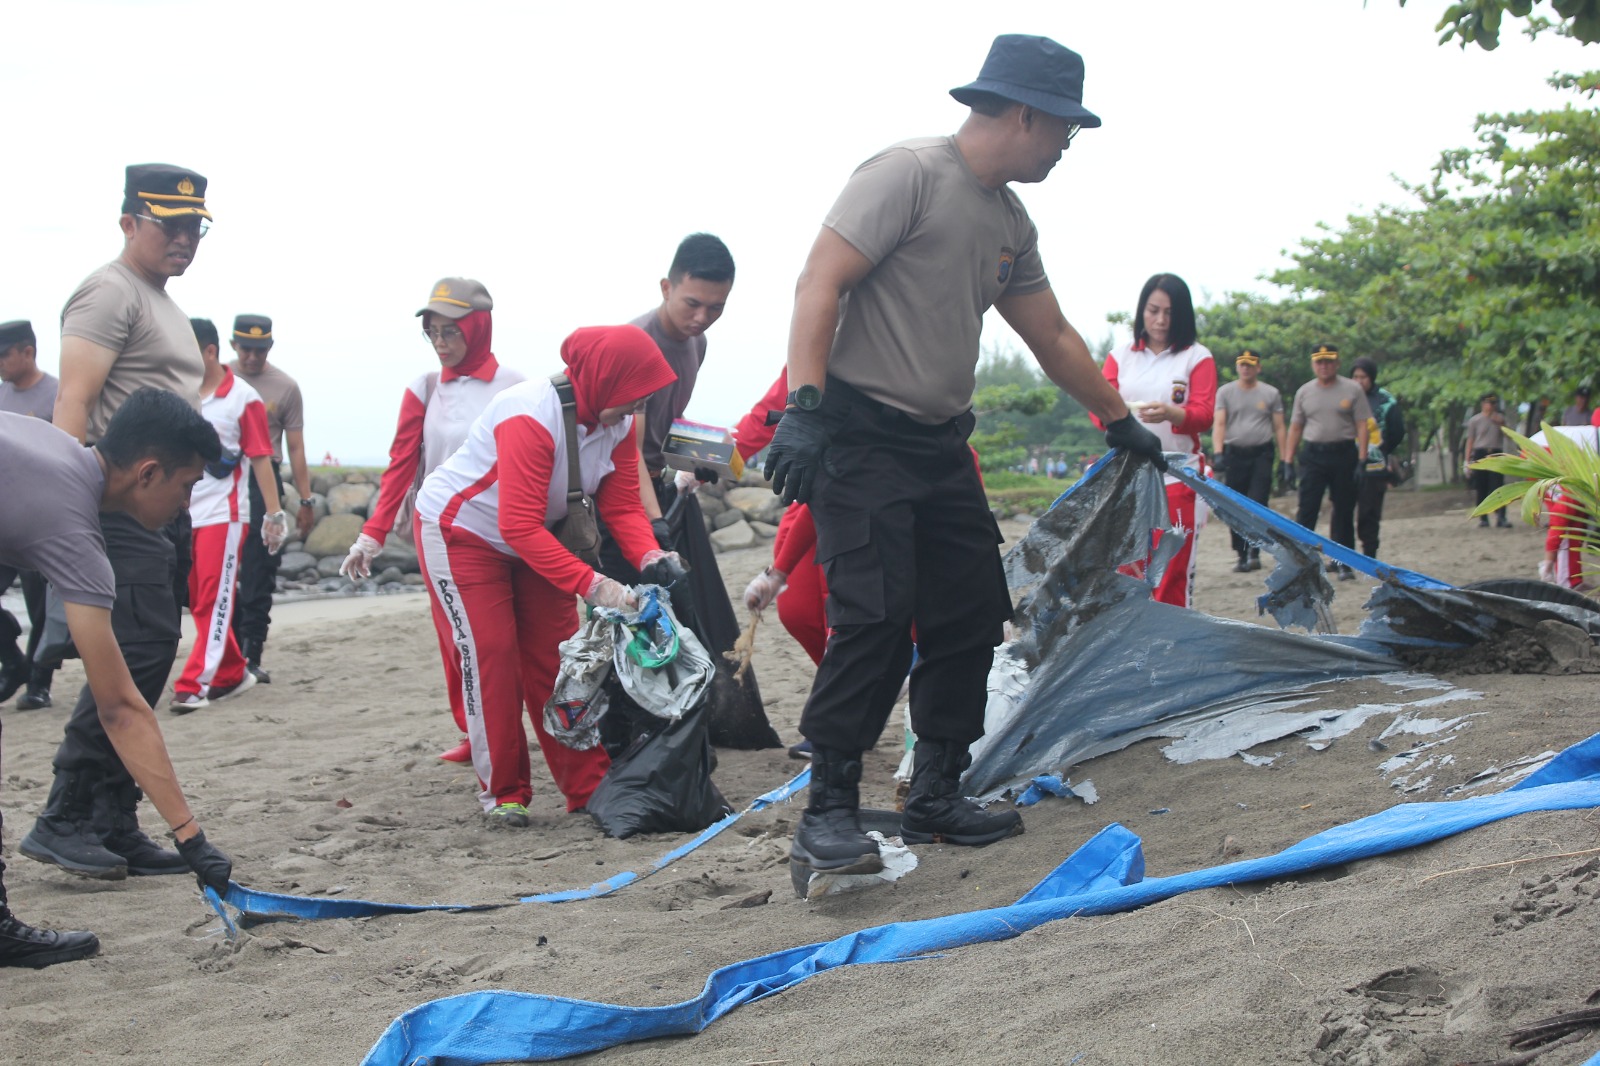 Peduli Kebersihan, Polda Sumbar Gelar Bersih-bersih di Pantai Padang